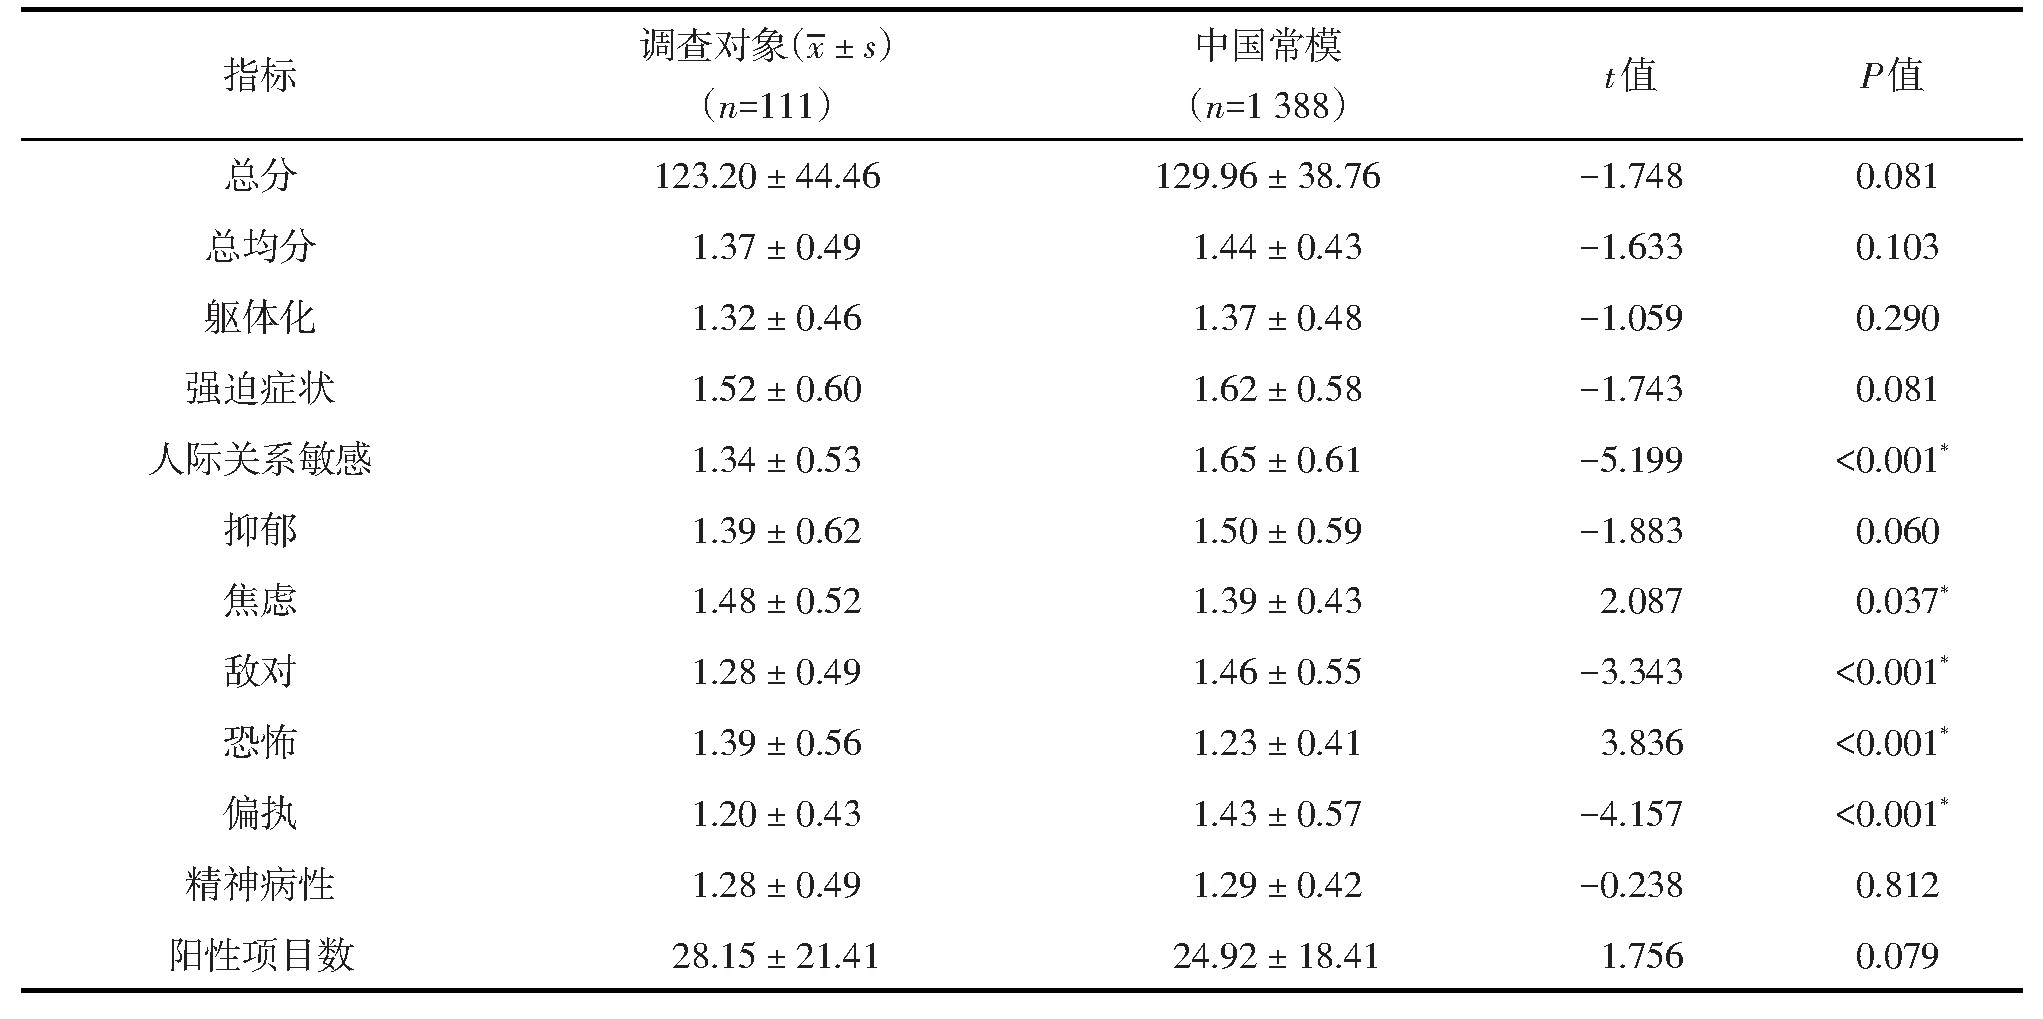 表1 111名调查对象SCL-90量表评分与中国常模比较